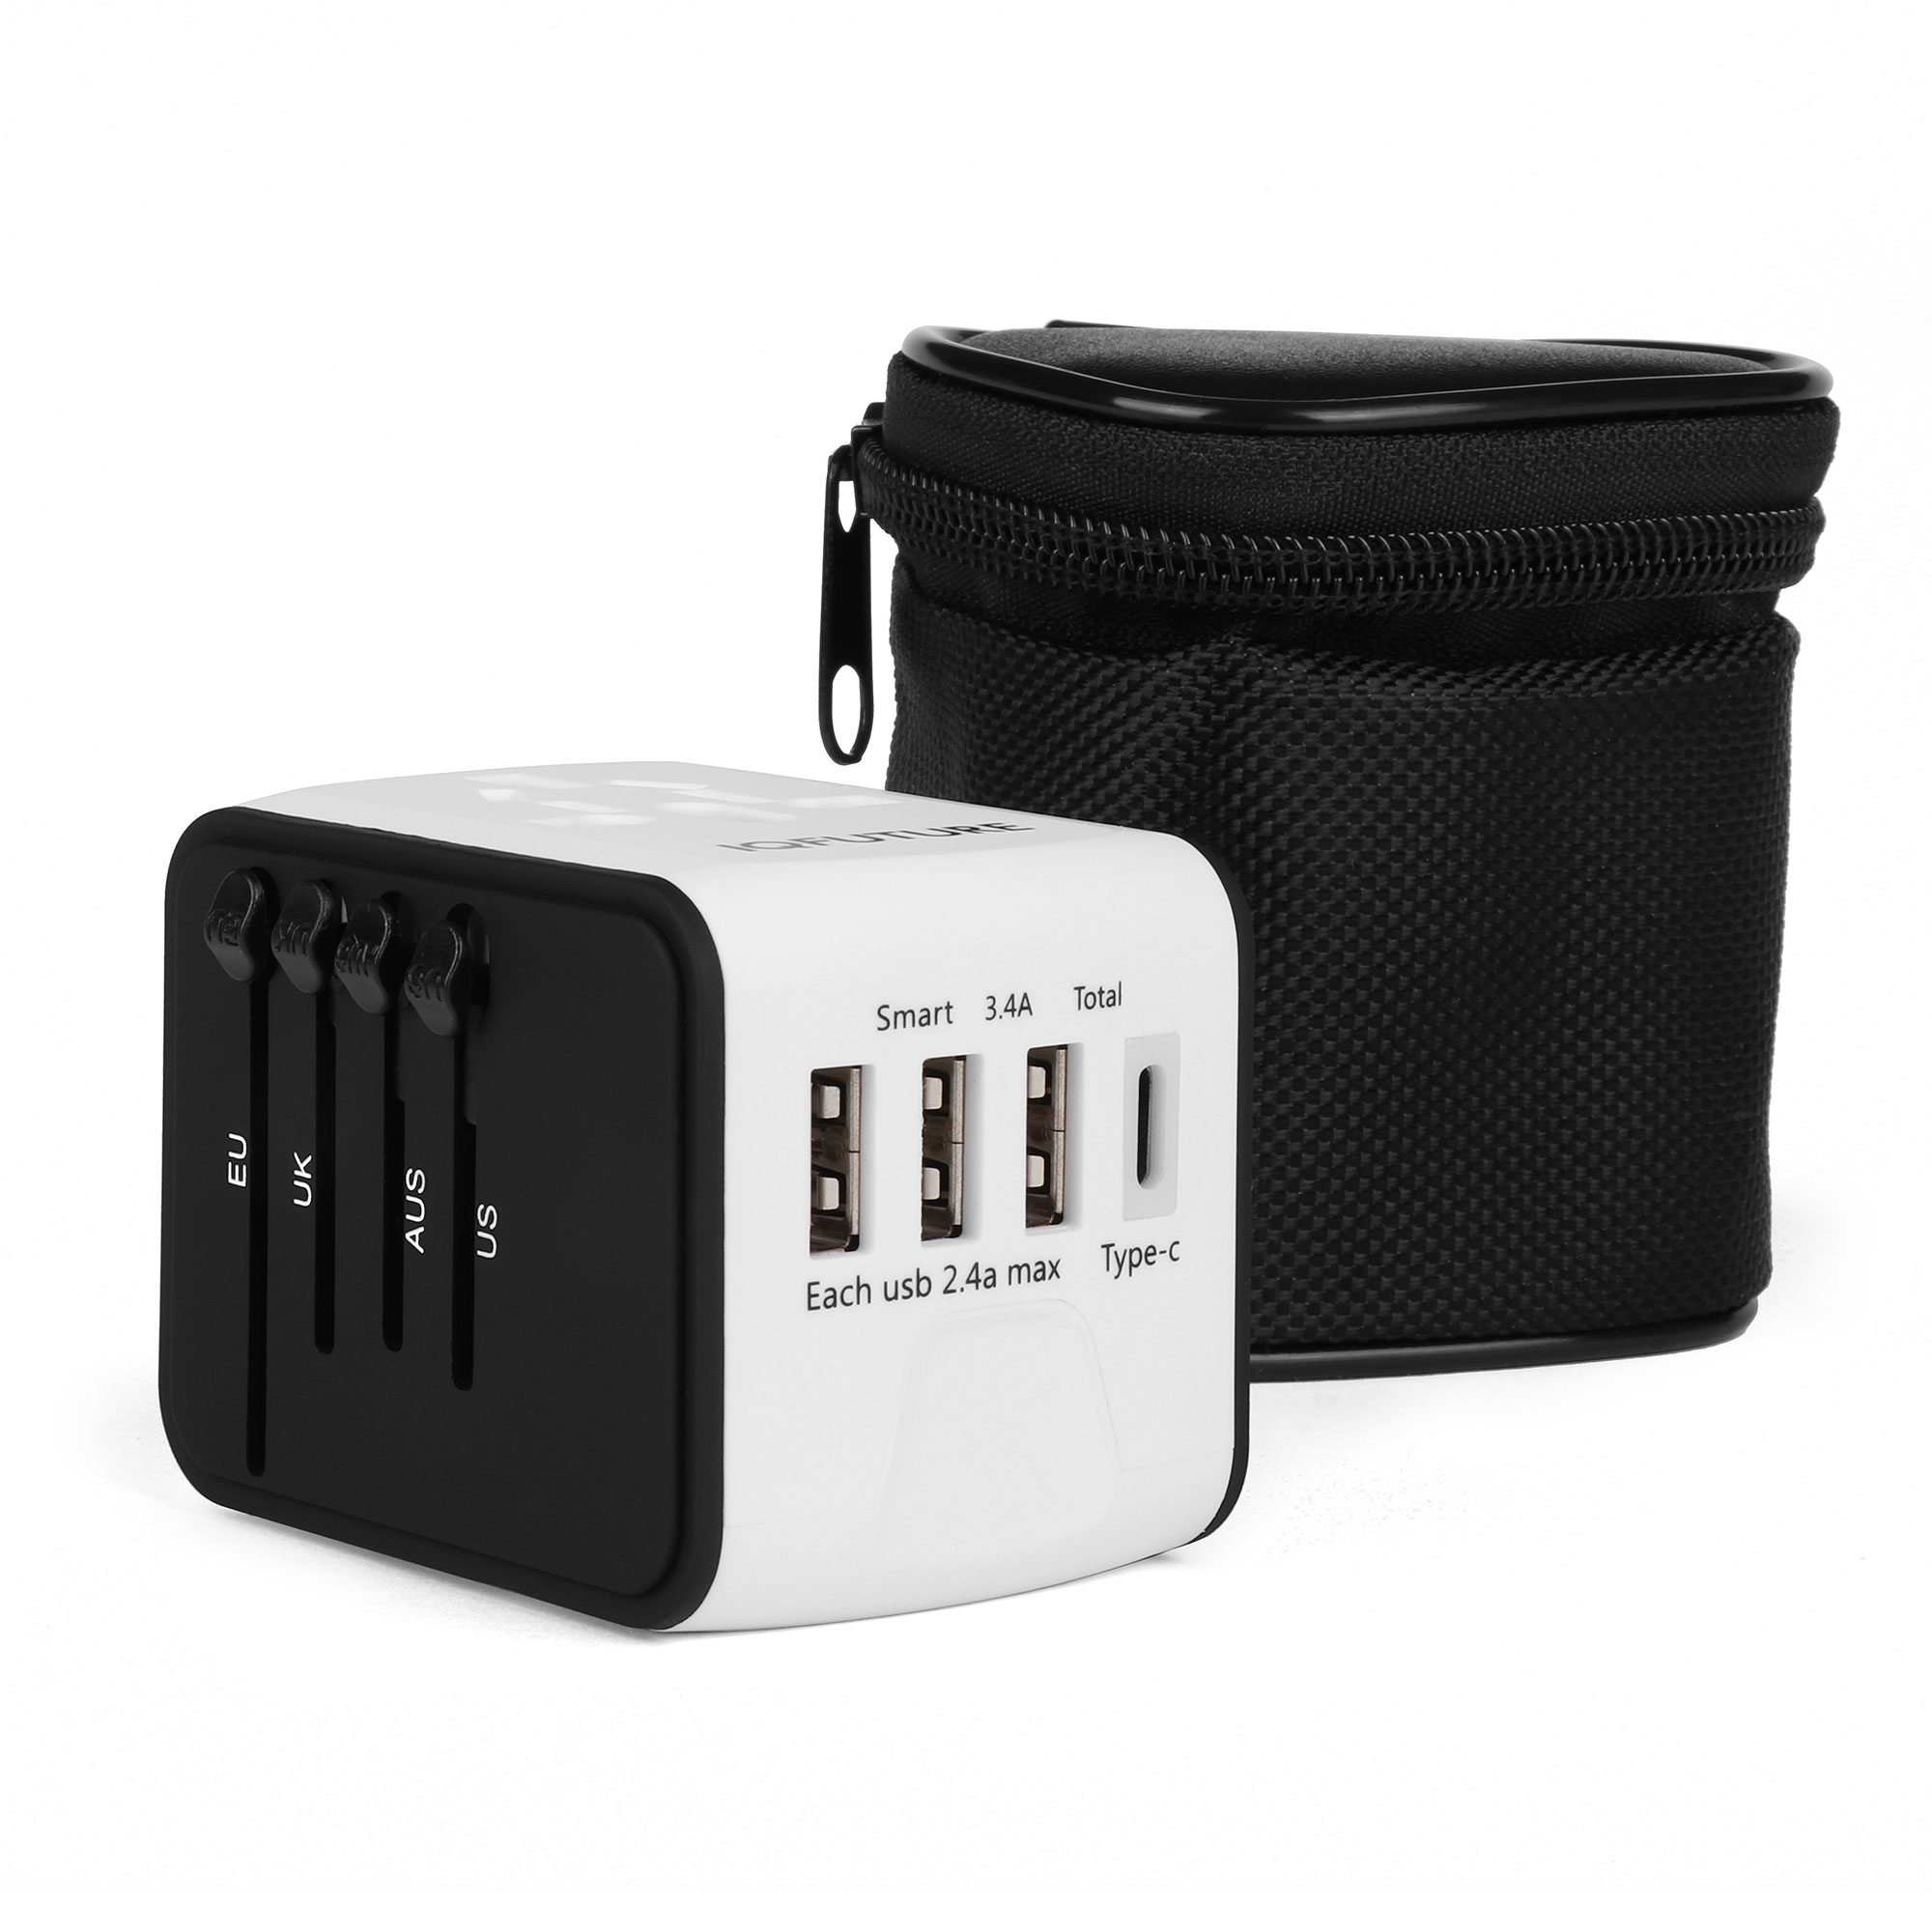 Адаптер IQ-TA, 3 USB, Type-C, для путешествий EU/US/UK/AU, чехол-сумка, белый/черный IQFuture (IQ-TA)